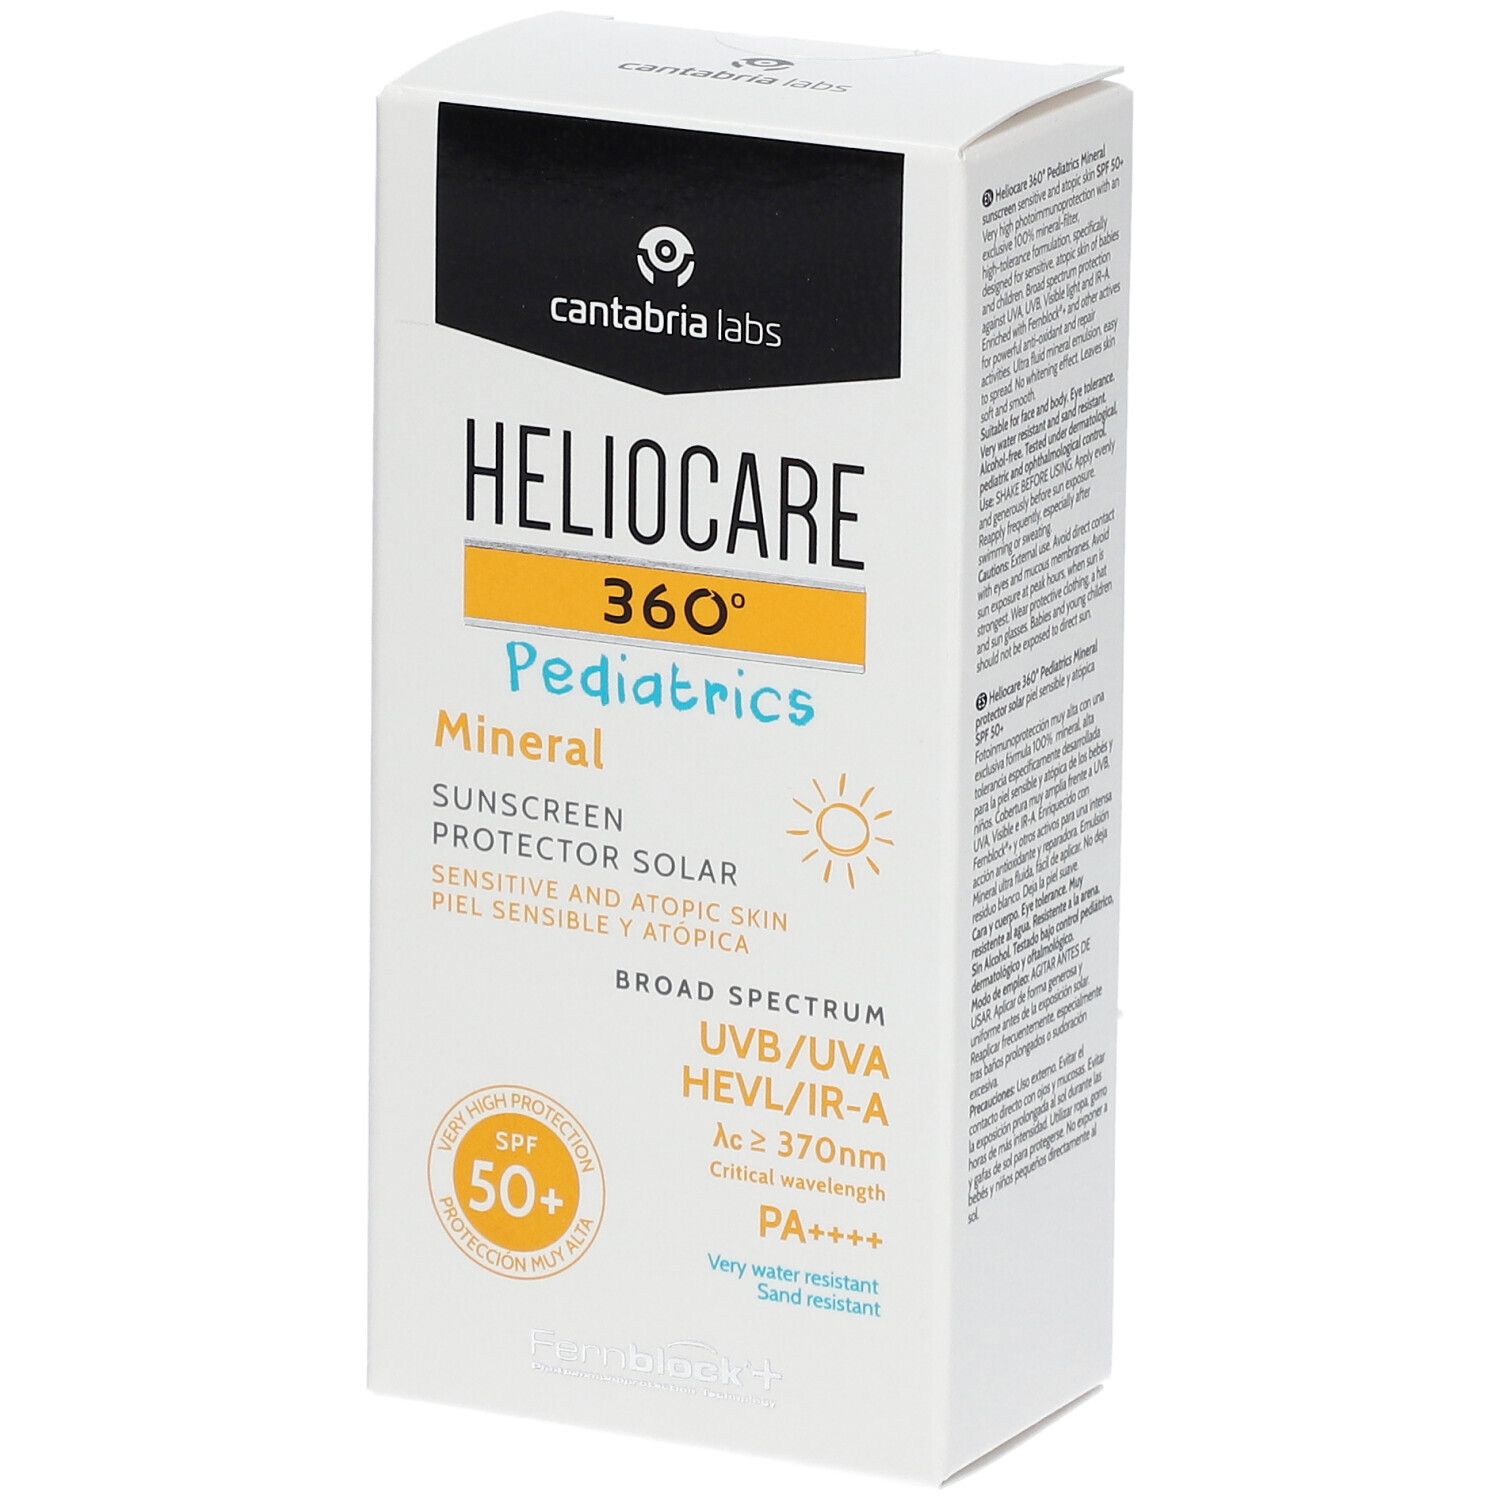 HELIOCARE® 360° Pediatrics Mineral LSF 50+